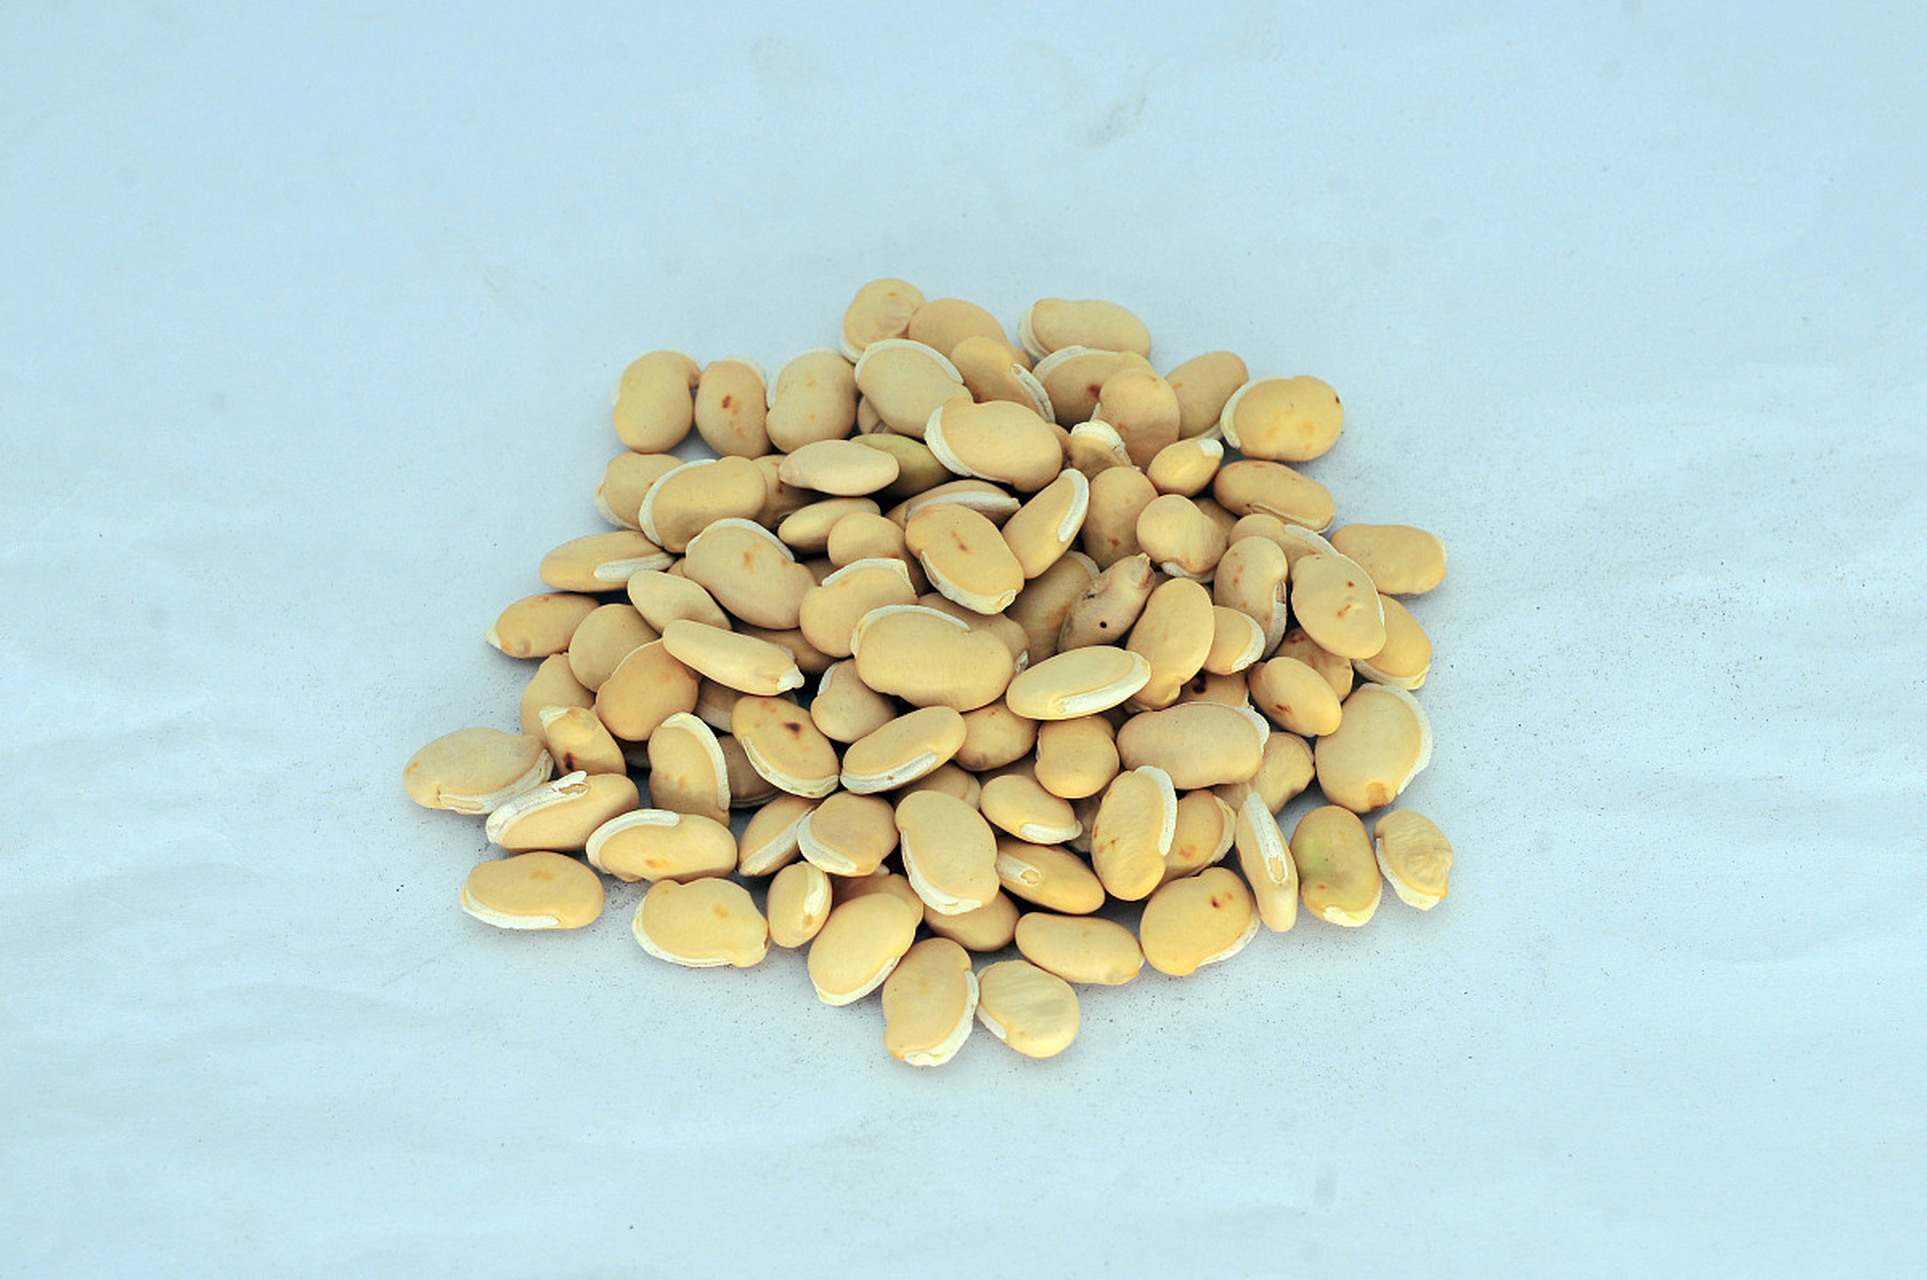 【常用祛湿的中药(1):白扁豆】 白扁豆为豆科一年生缠绕草本植物